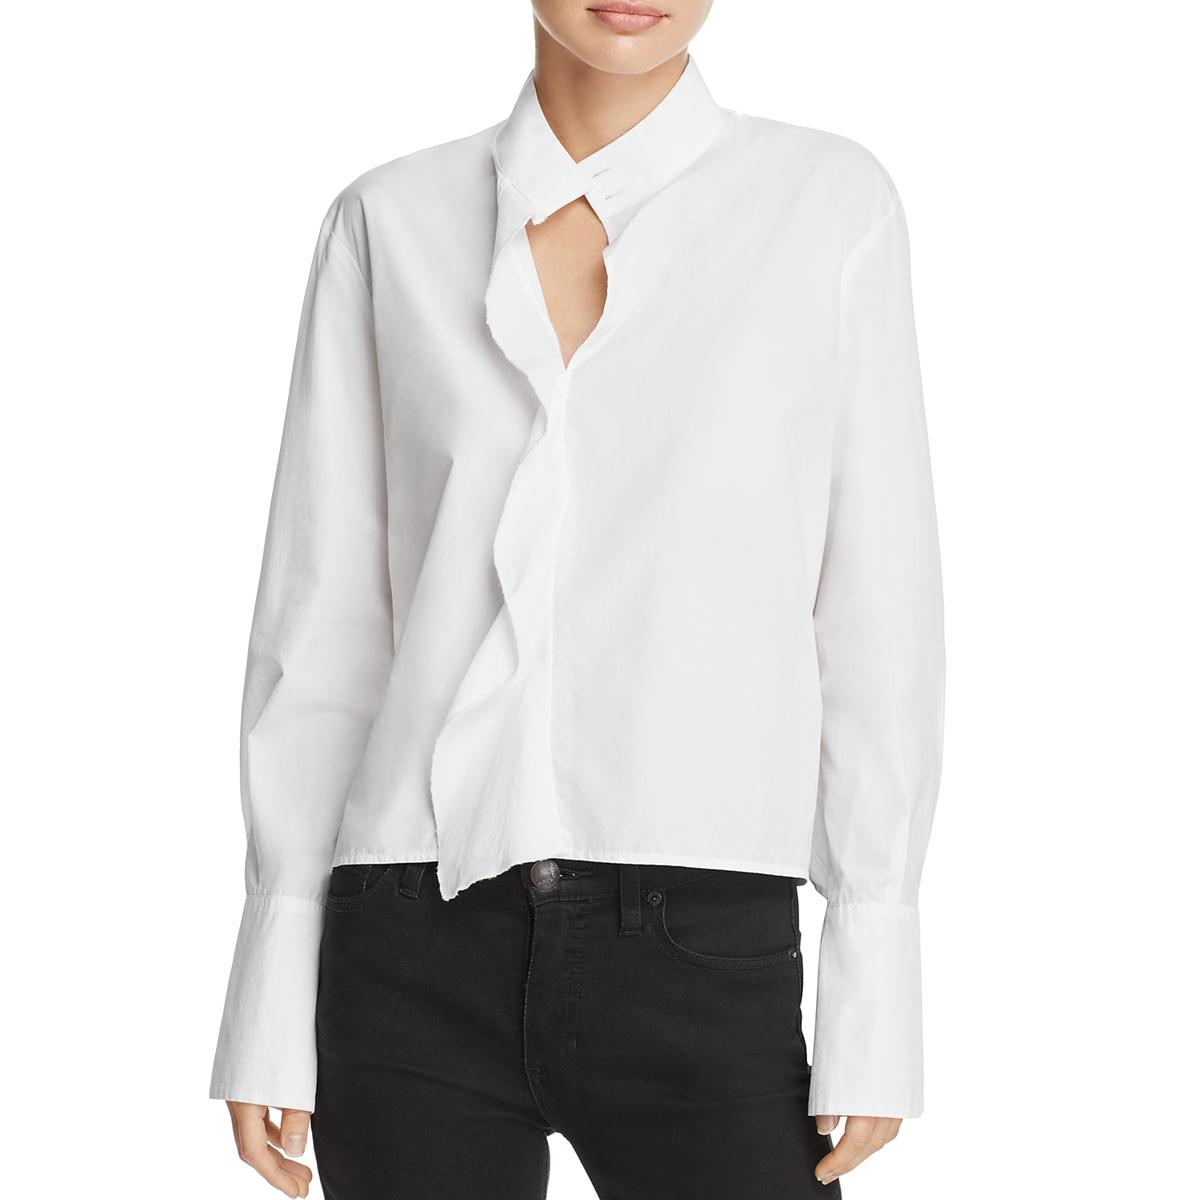 Frame Womens White Cotton Ruffled V-Neck Blouse Top S BHFO 6086 | eBay